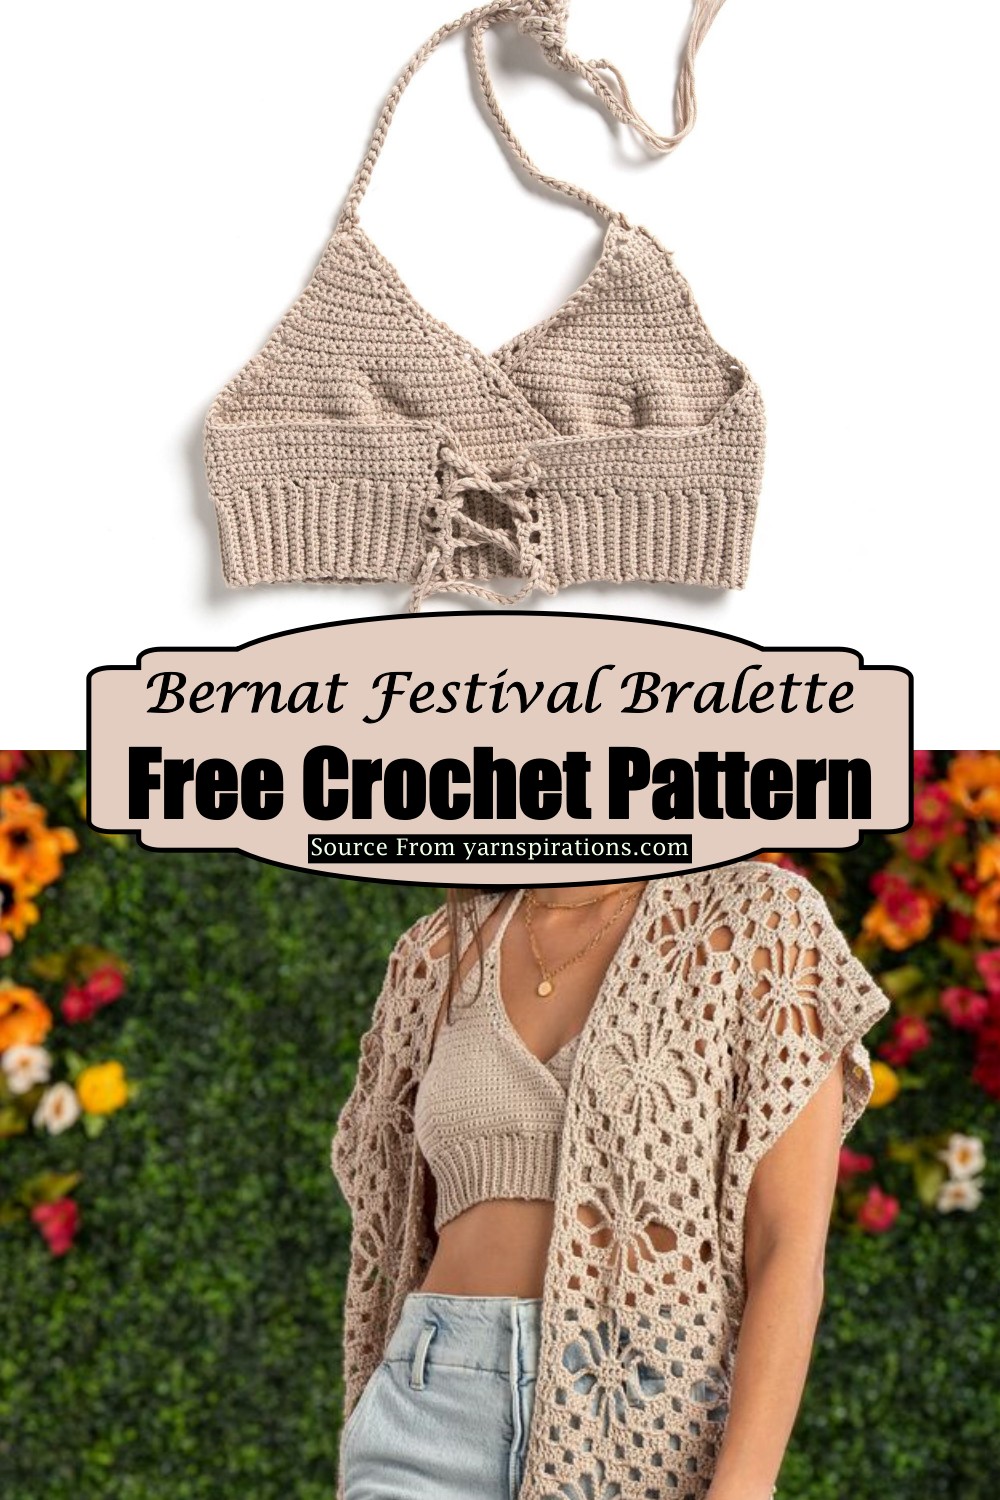 Bernat Crochet Festival Bralette